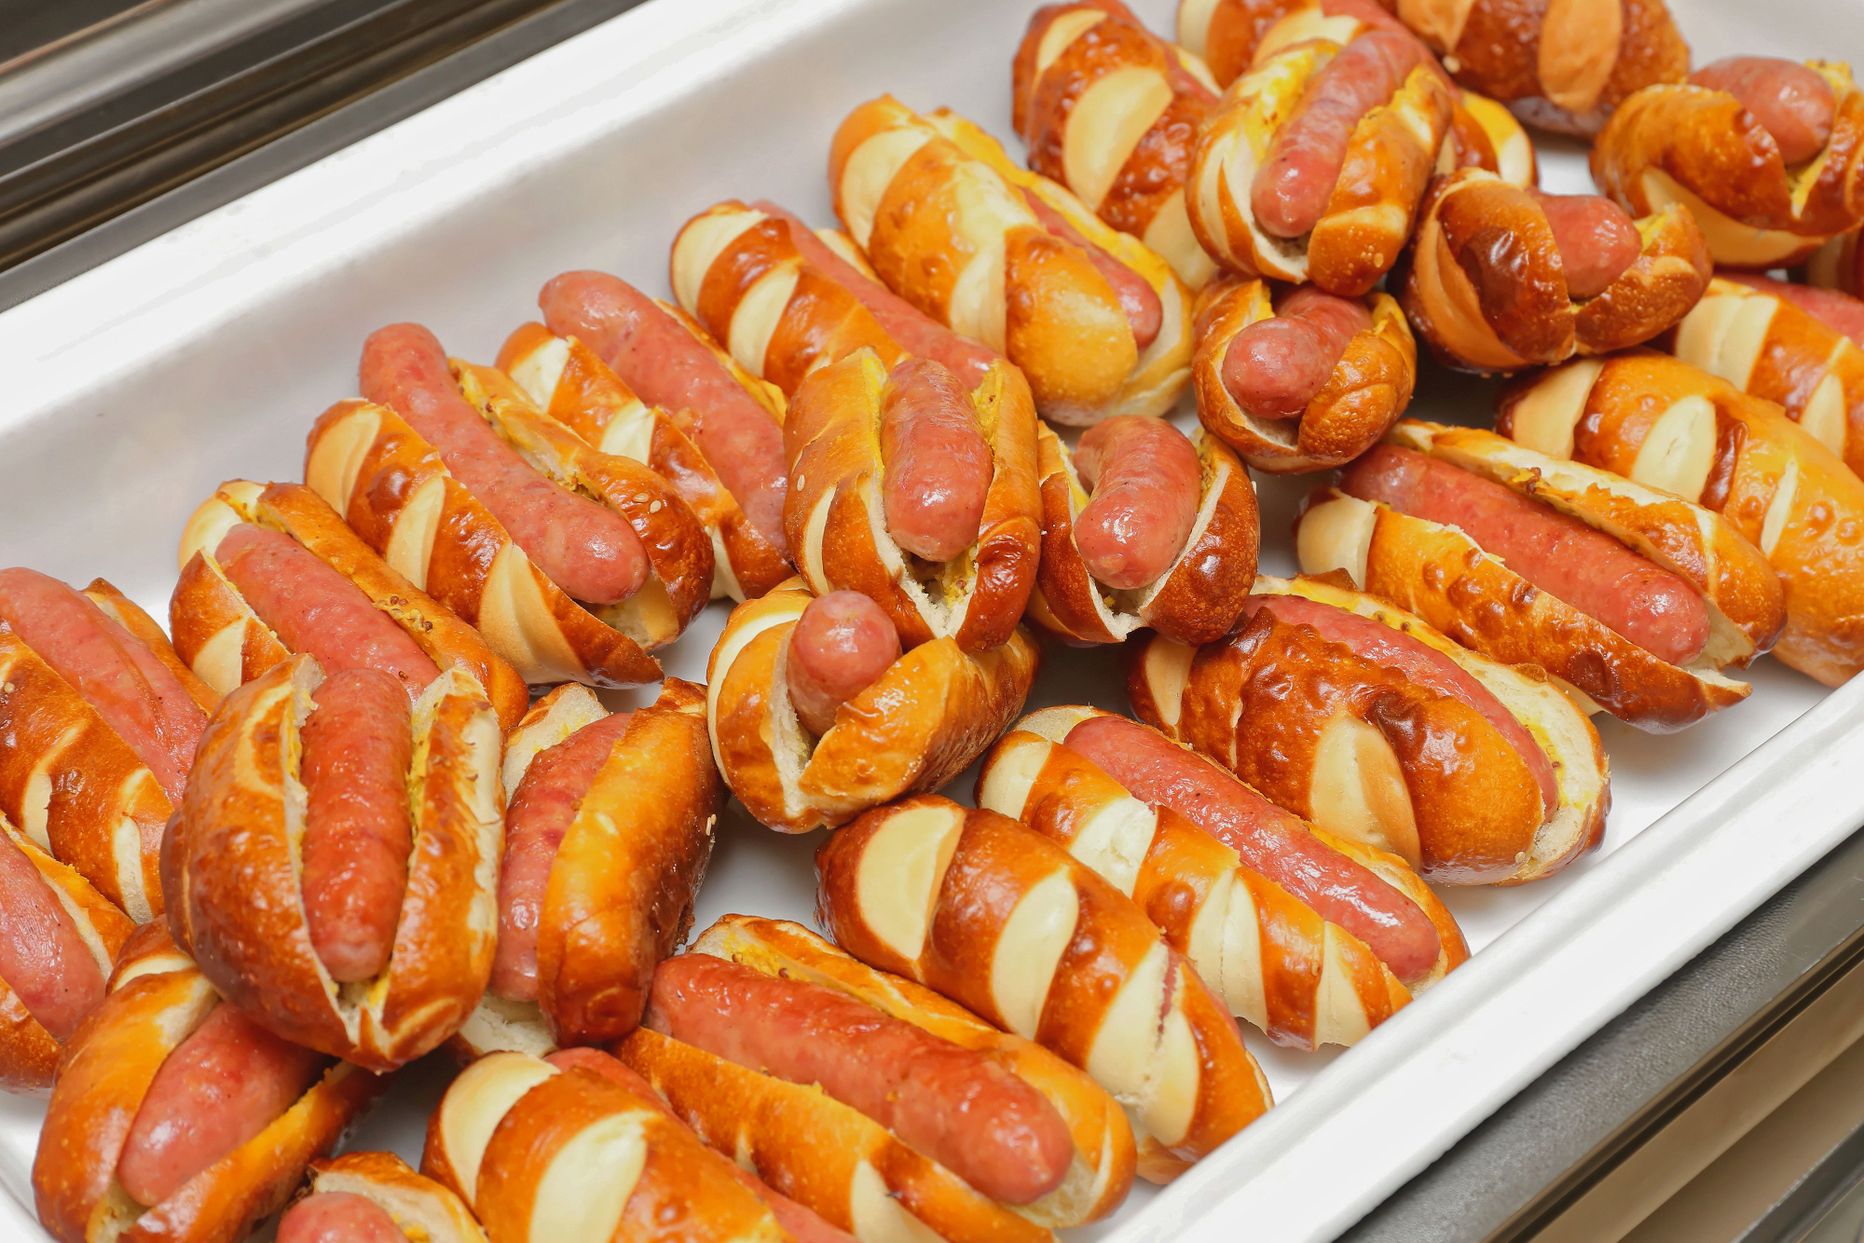 Tagasi kutsutakse enneolematus koguses hot-doge.